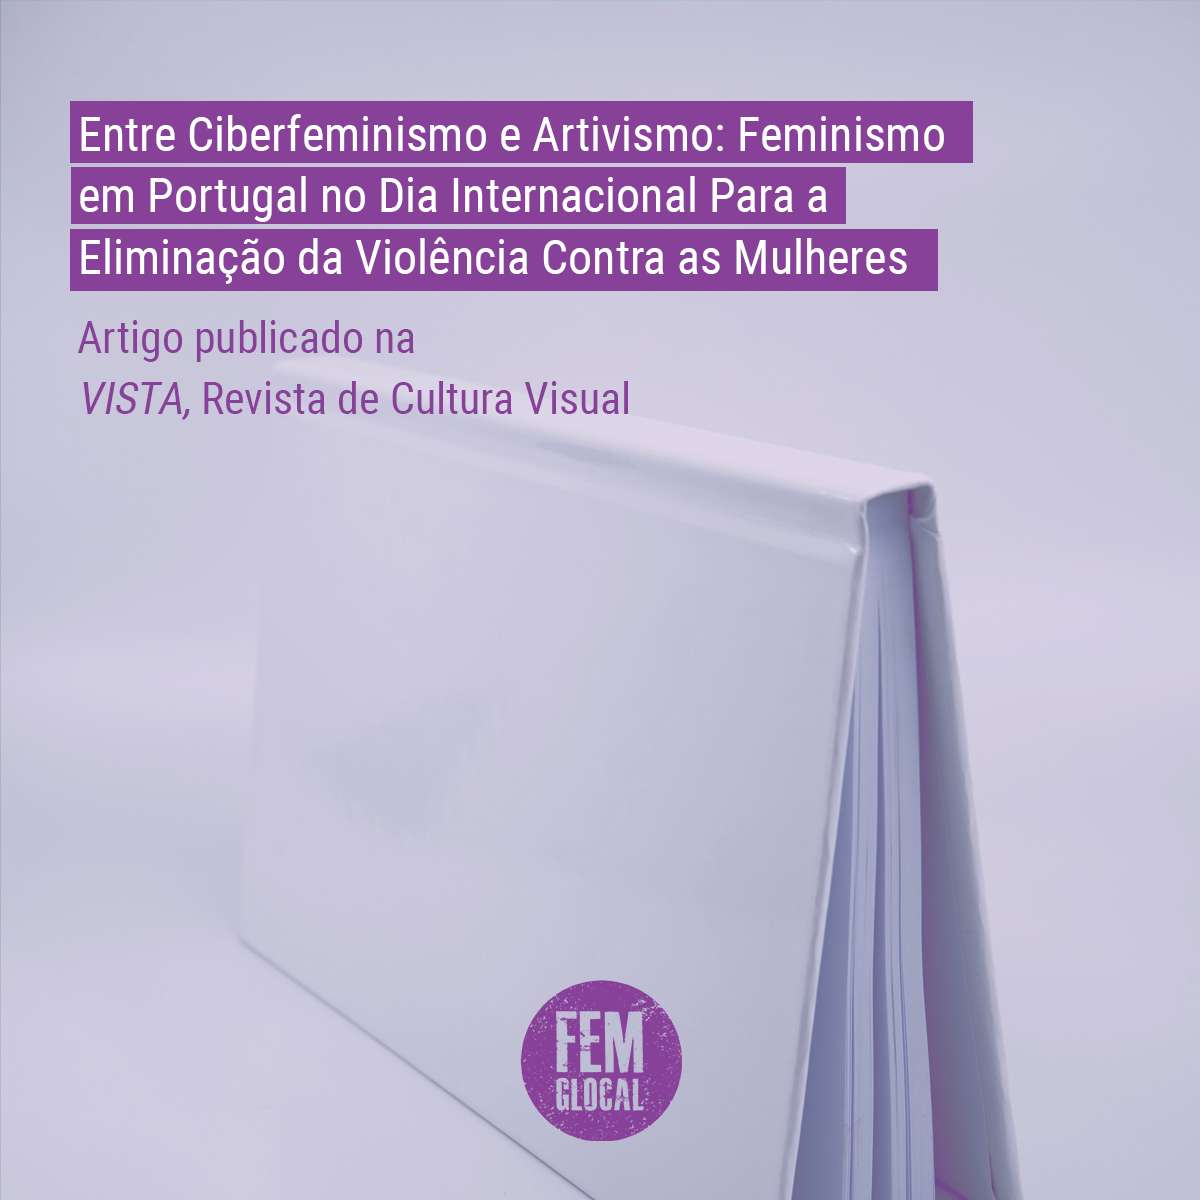 Entre Ciberfeminismo e Artivismo: Feminismo em Portugal no Dia Internacional Para a Eliminação da Violência Contra as Mulheres